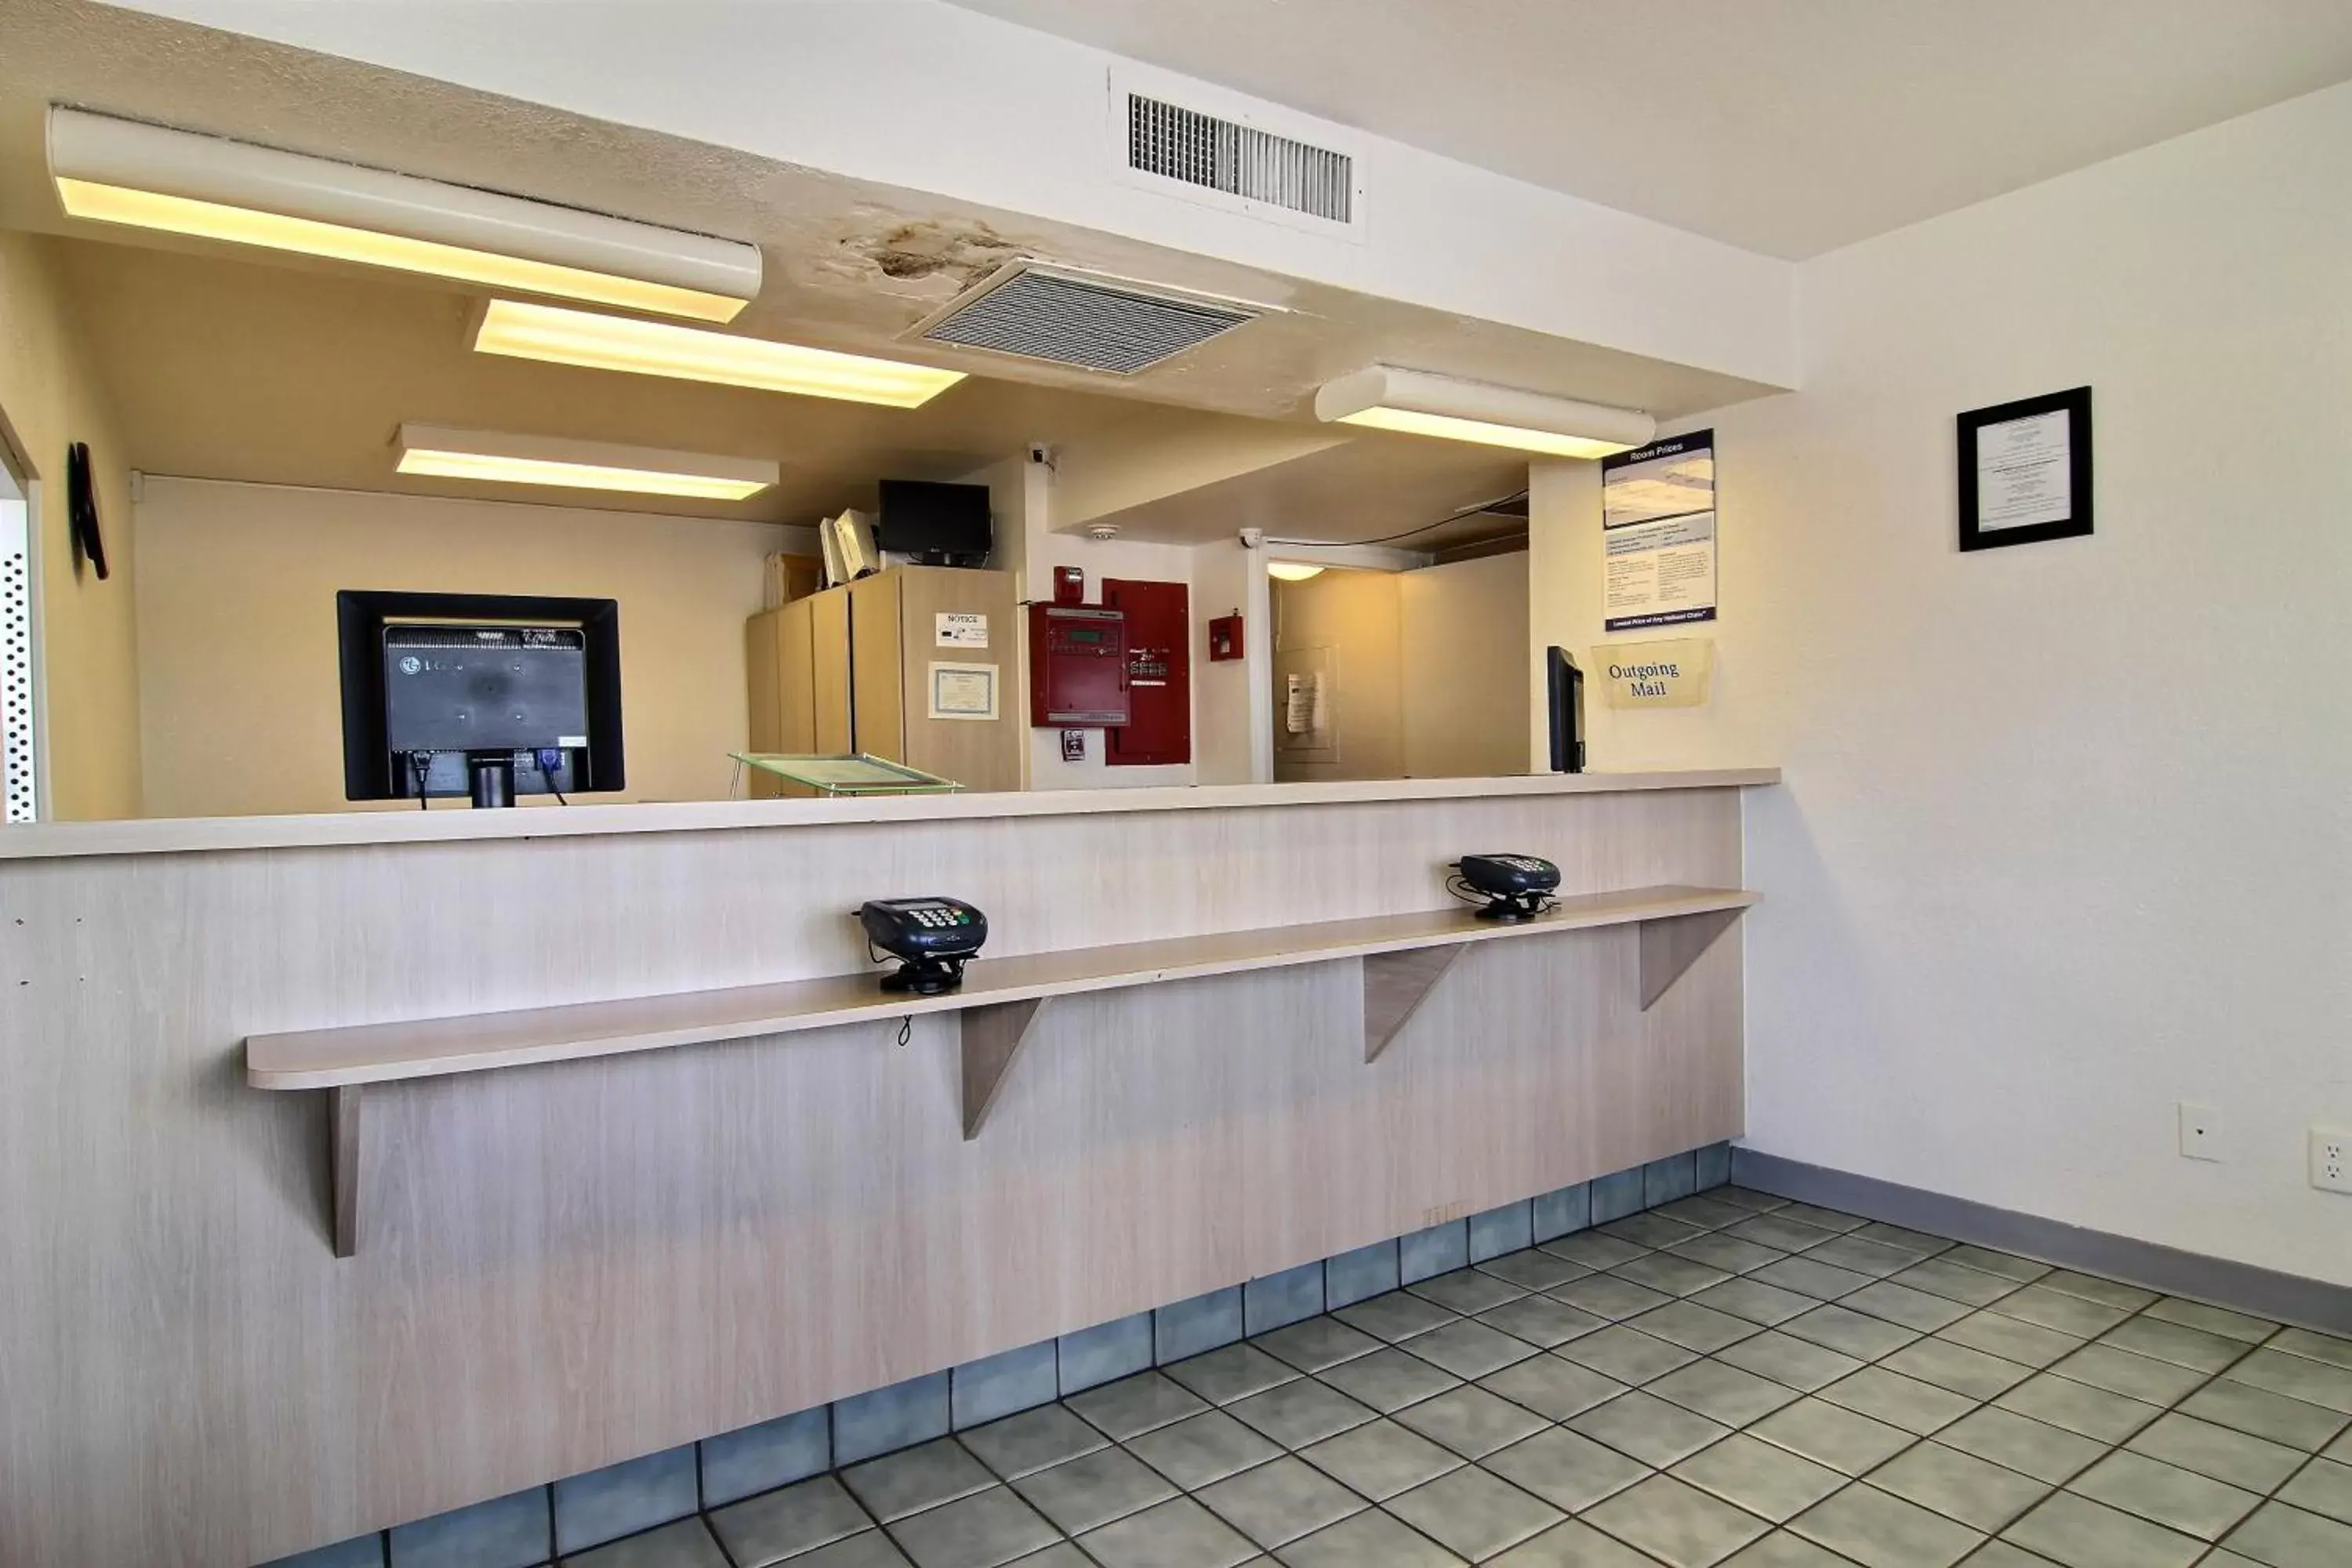 Lobby or reception, Lobby/Reception in Motel 6-Tucumcari, NM